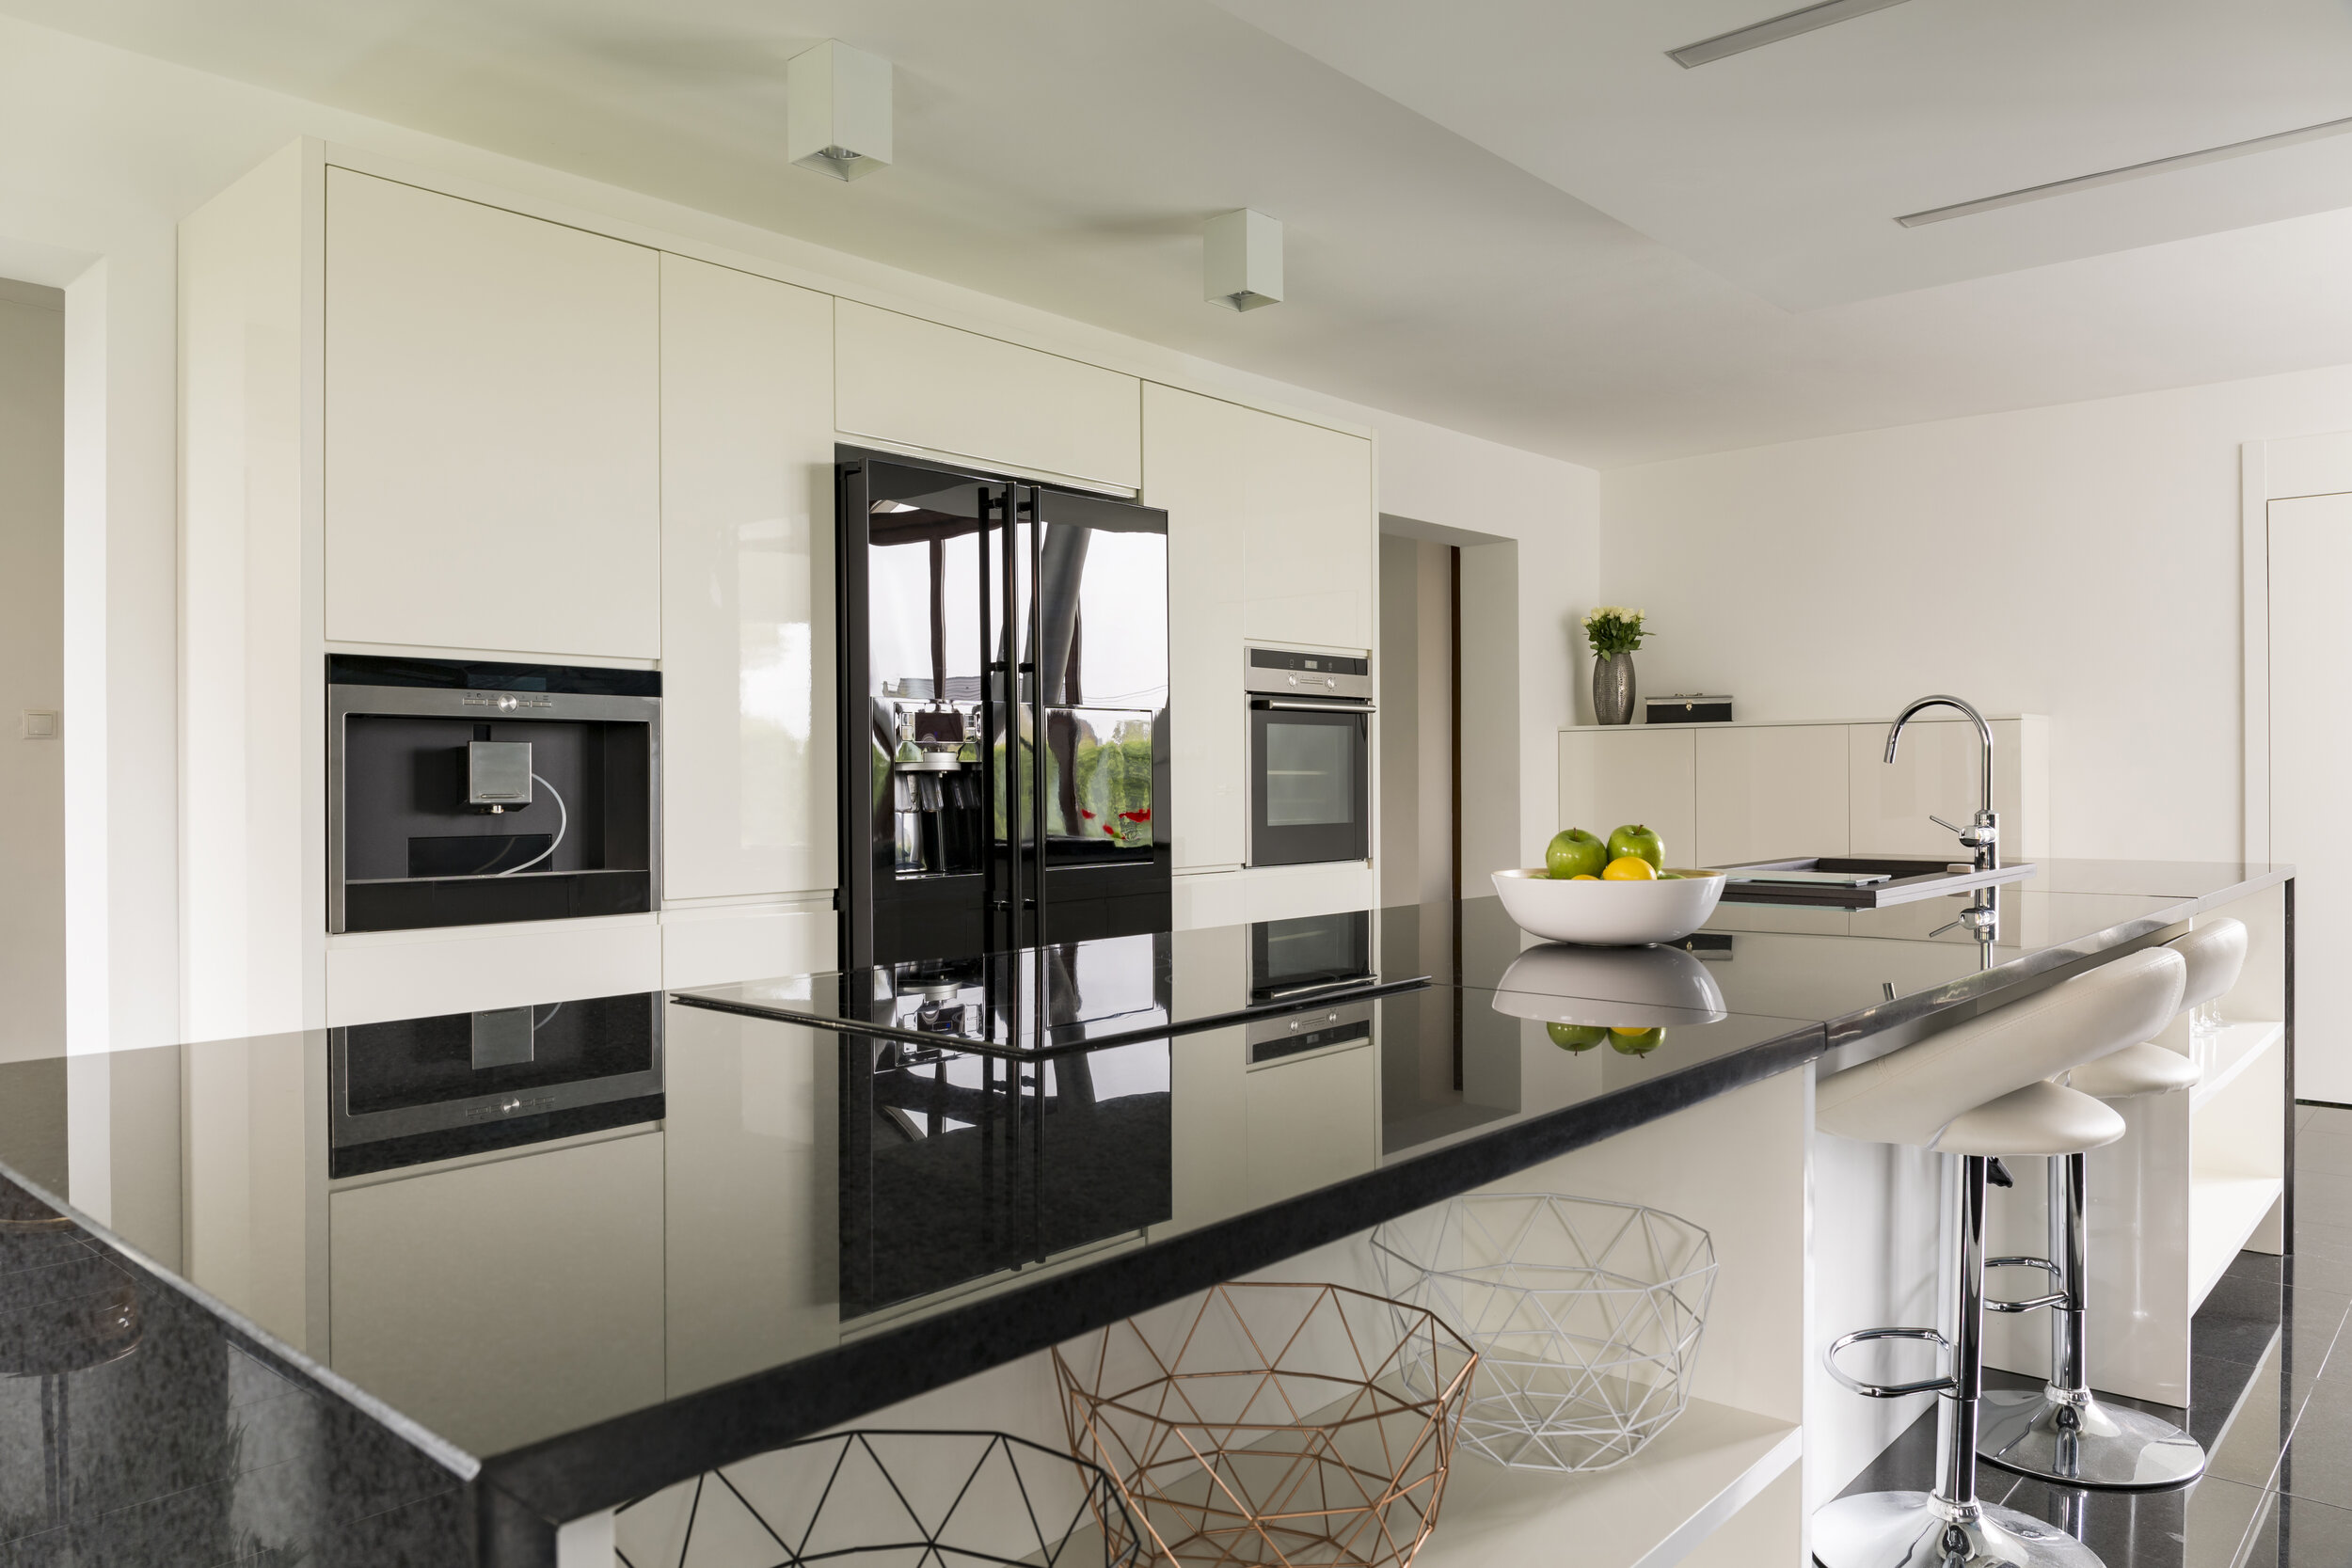 kitchen-island-in-luxurious-interior-P36TP5U.jpg